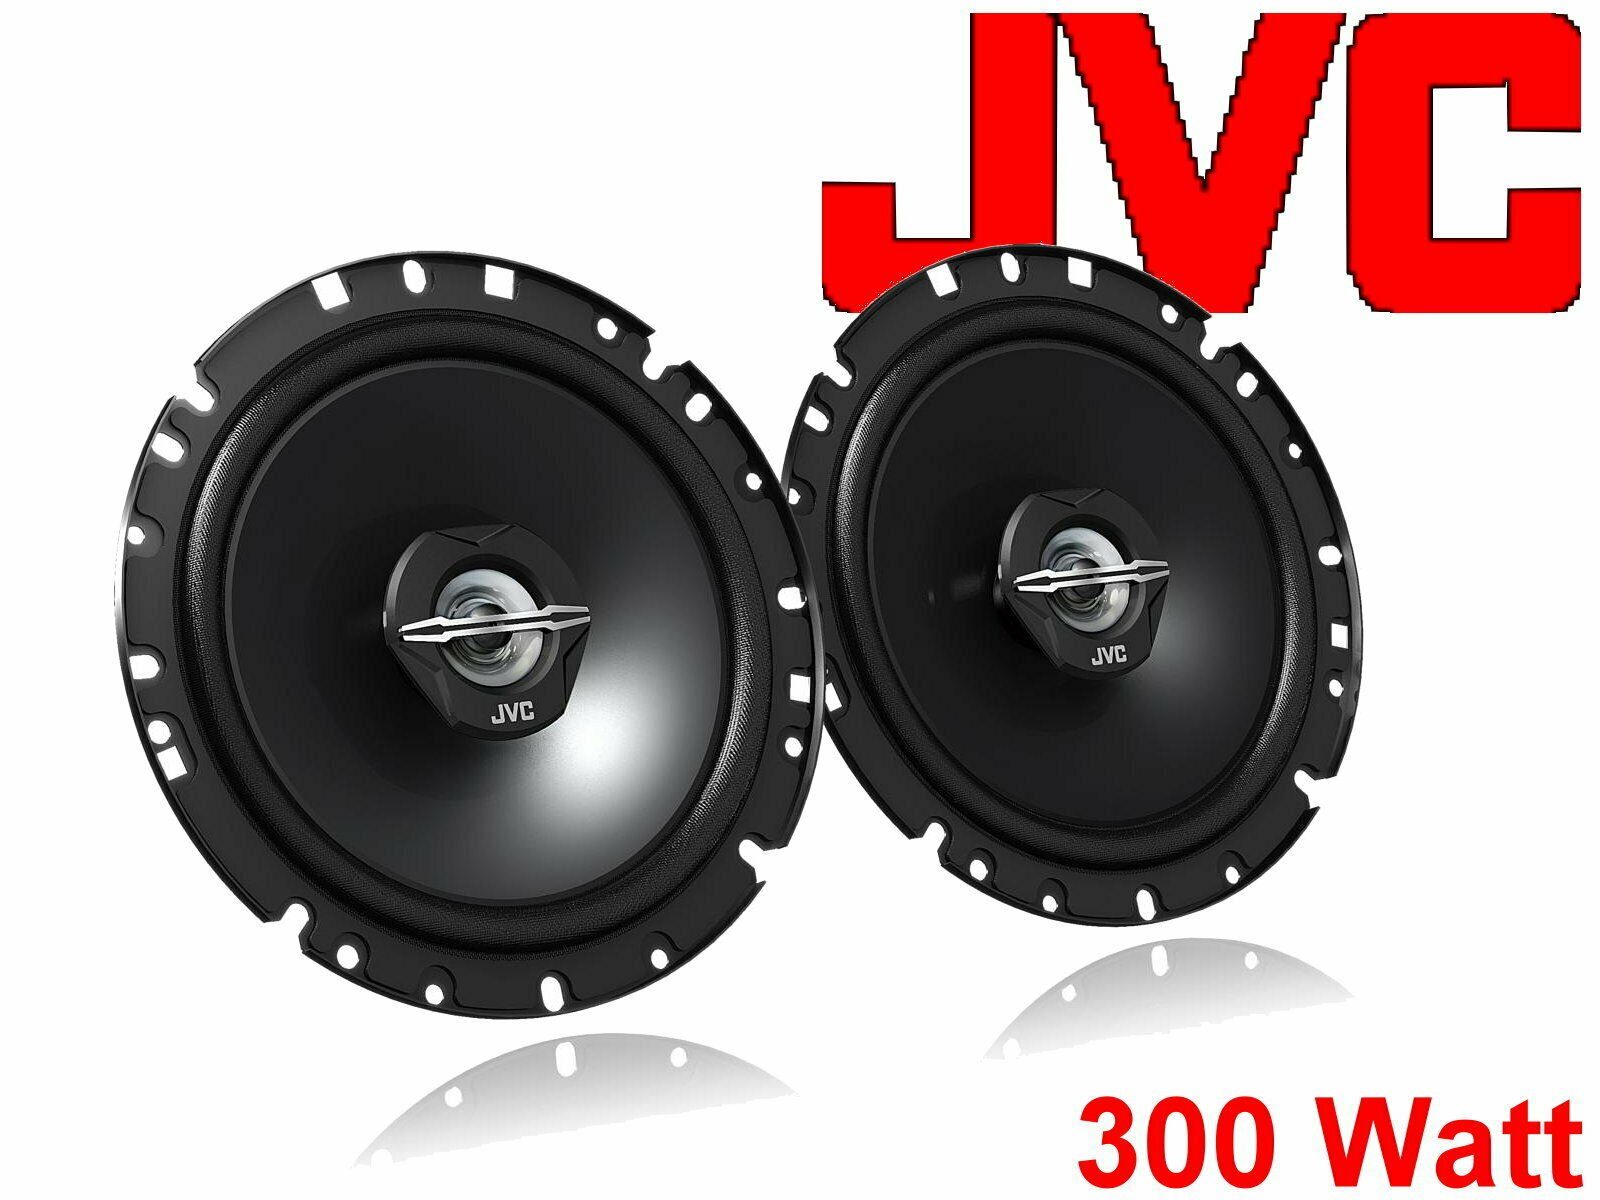 Set (30 99 passend W) für Auto-Lautsprecher Seat grau DSX Leon Bj Lautsprecher JVC